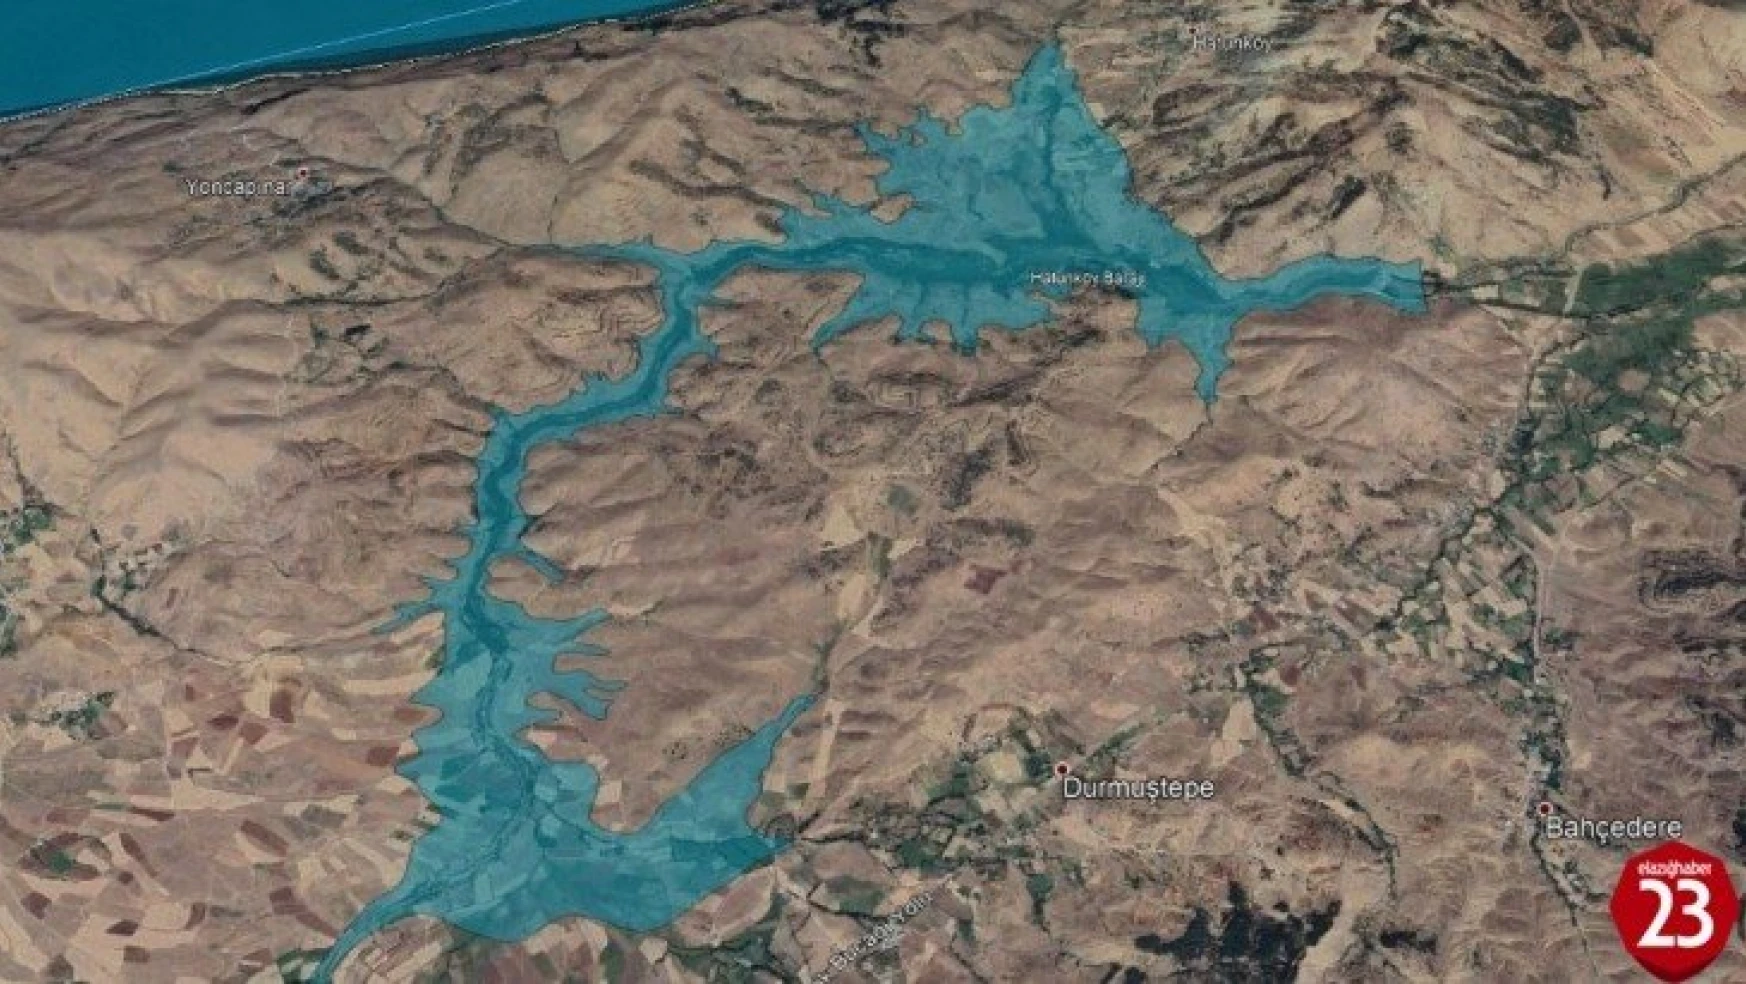 Elazığ'da Behramaz Havzası Master Planı kapsamında baraj ihalesi yapıldı